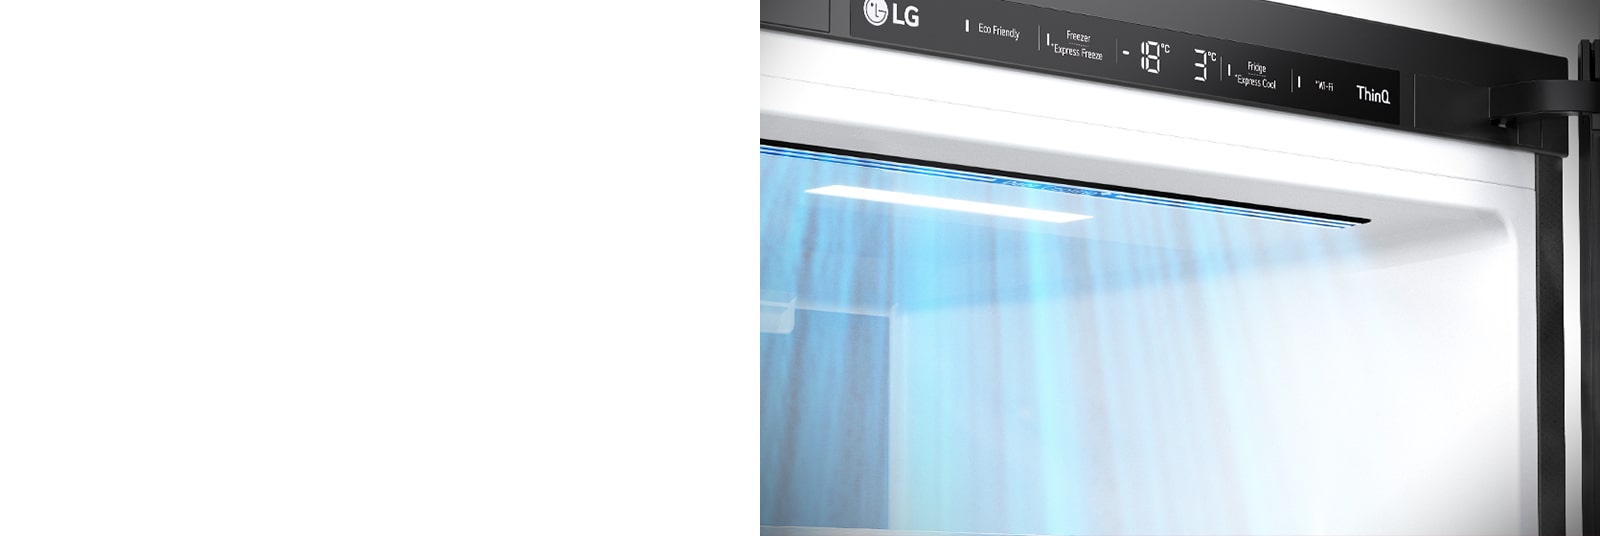 Lähikuva jääkaapin etuosassa olevista ilma-aukoista, jotka takaavat tehokkaan ja tasaisen jäähdytyksen.